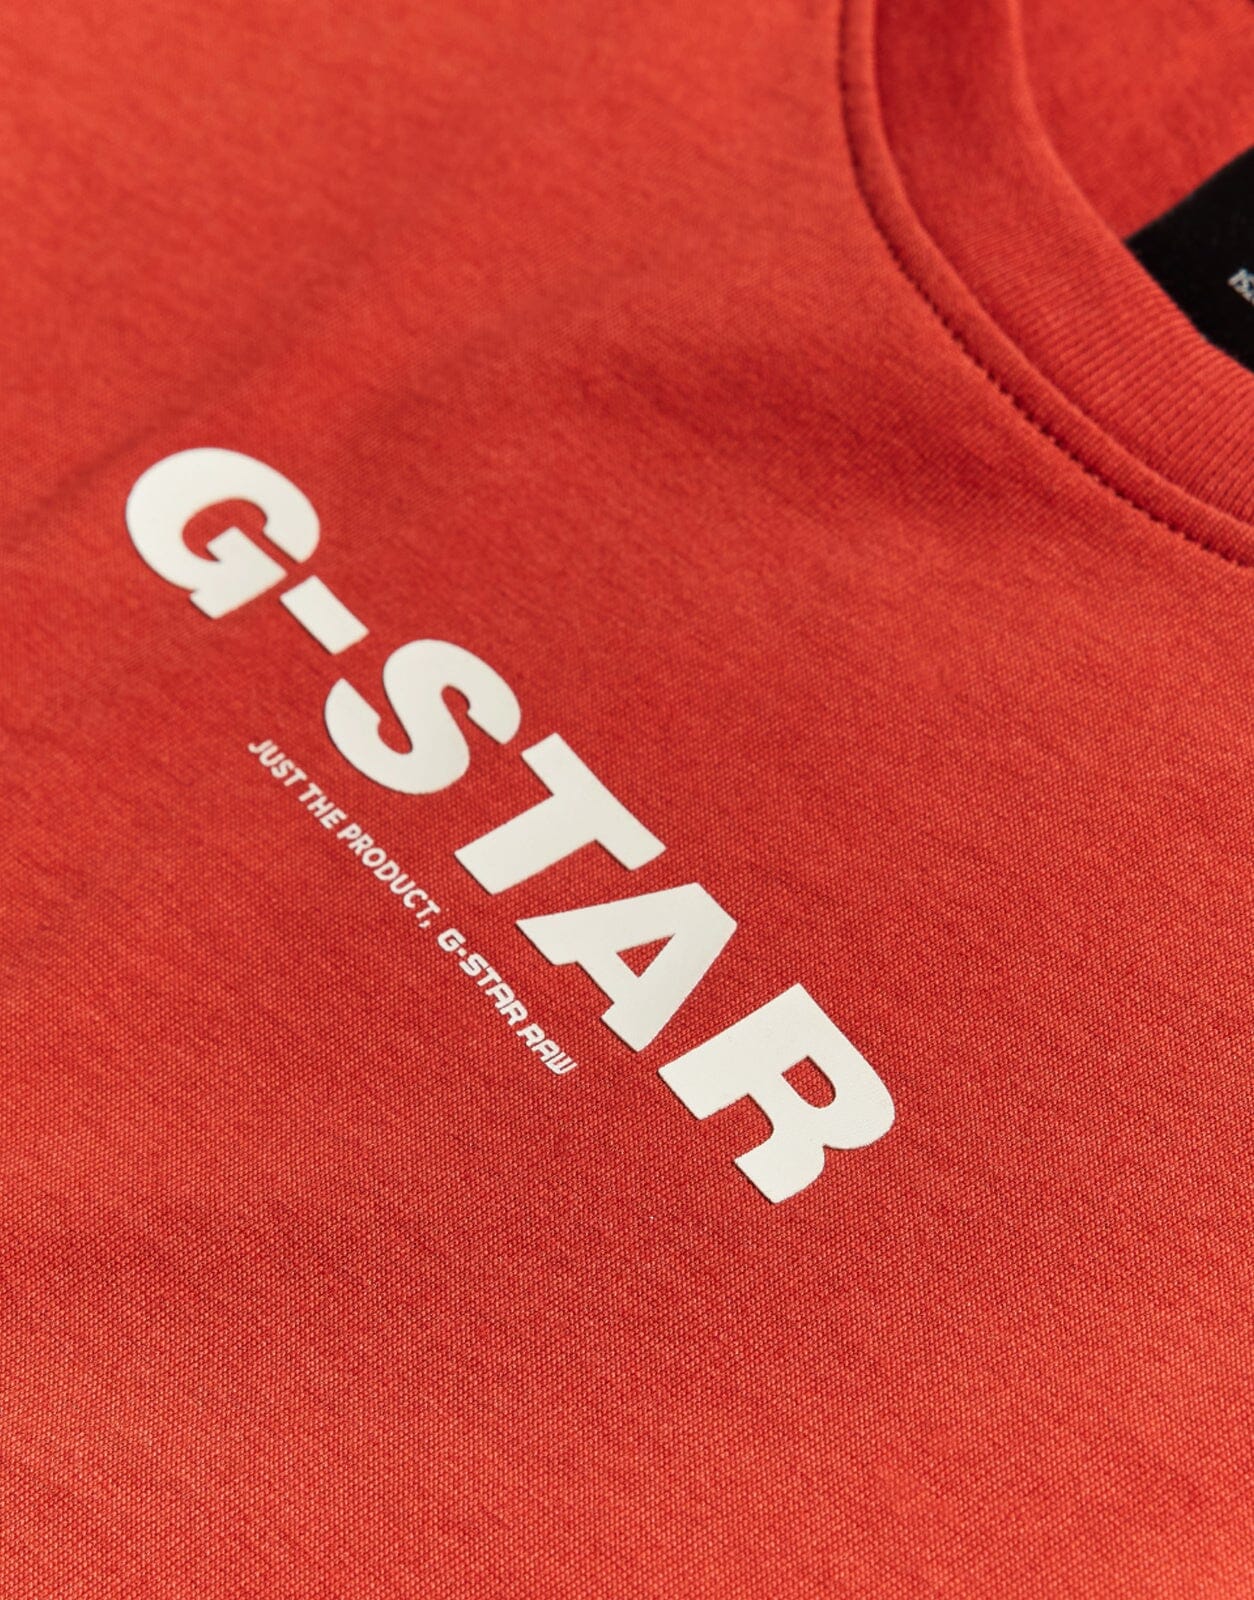 G-Star RAW Kids T-Shirt Rusty Red - Subwear